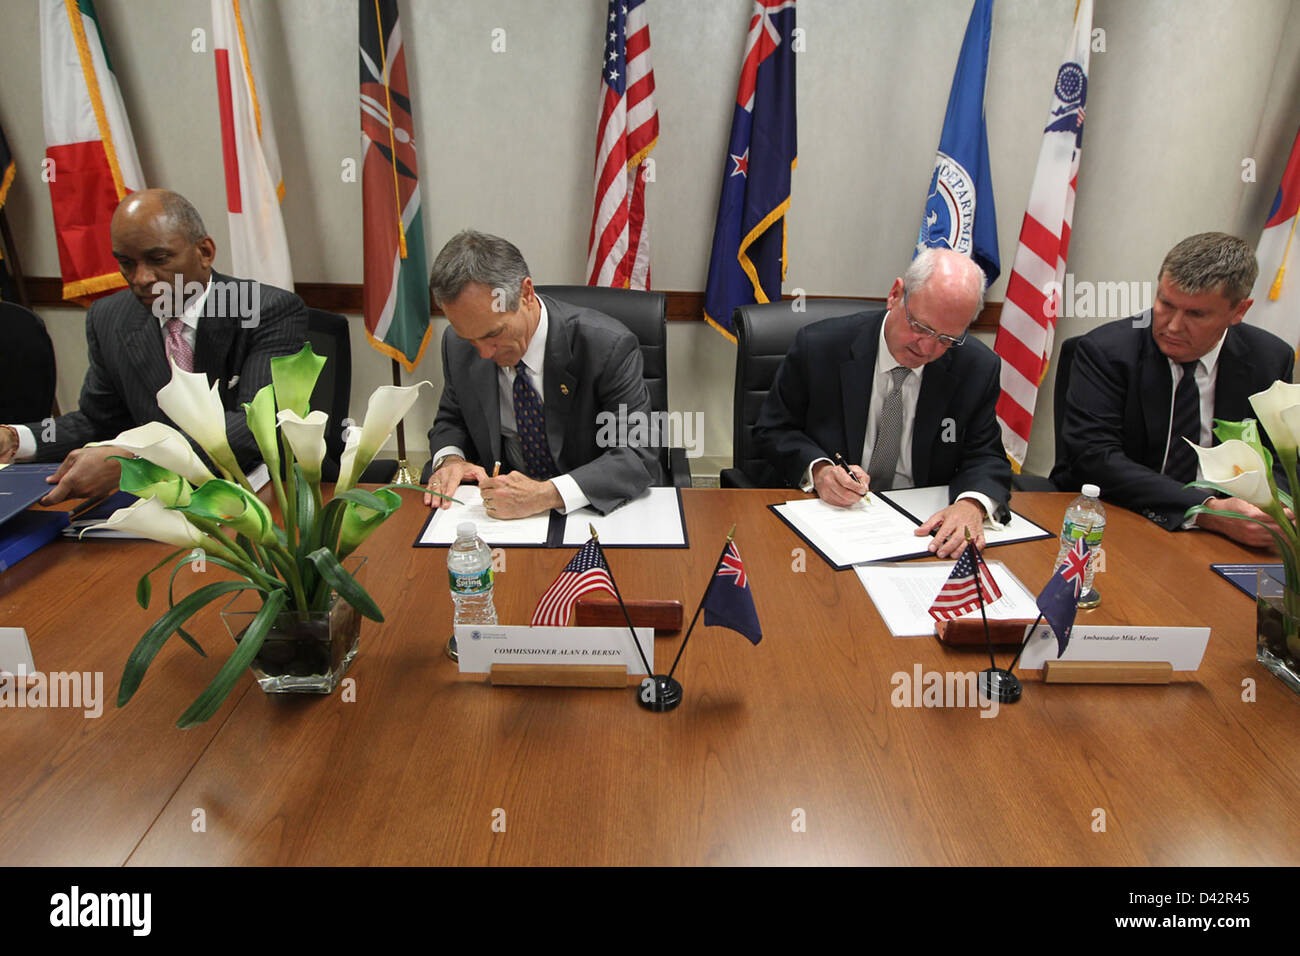 Signor Commissario Alan Bersin e Ambasciatrice neozelandese Moore firmare accordi Foto Stock